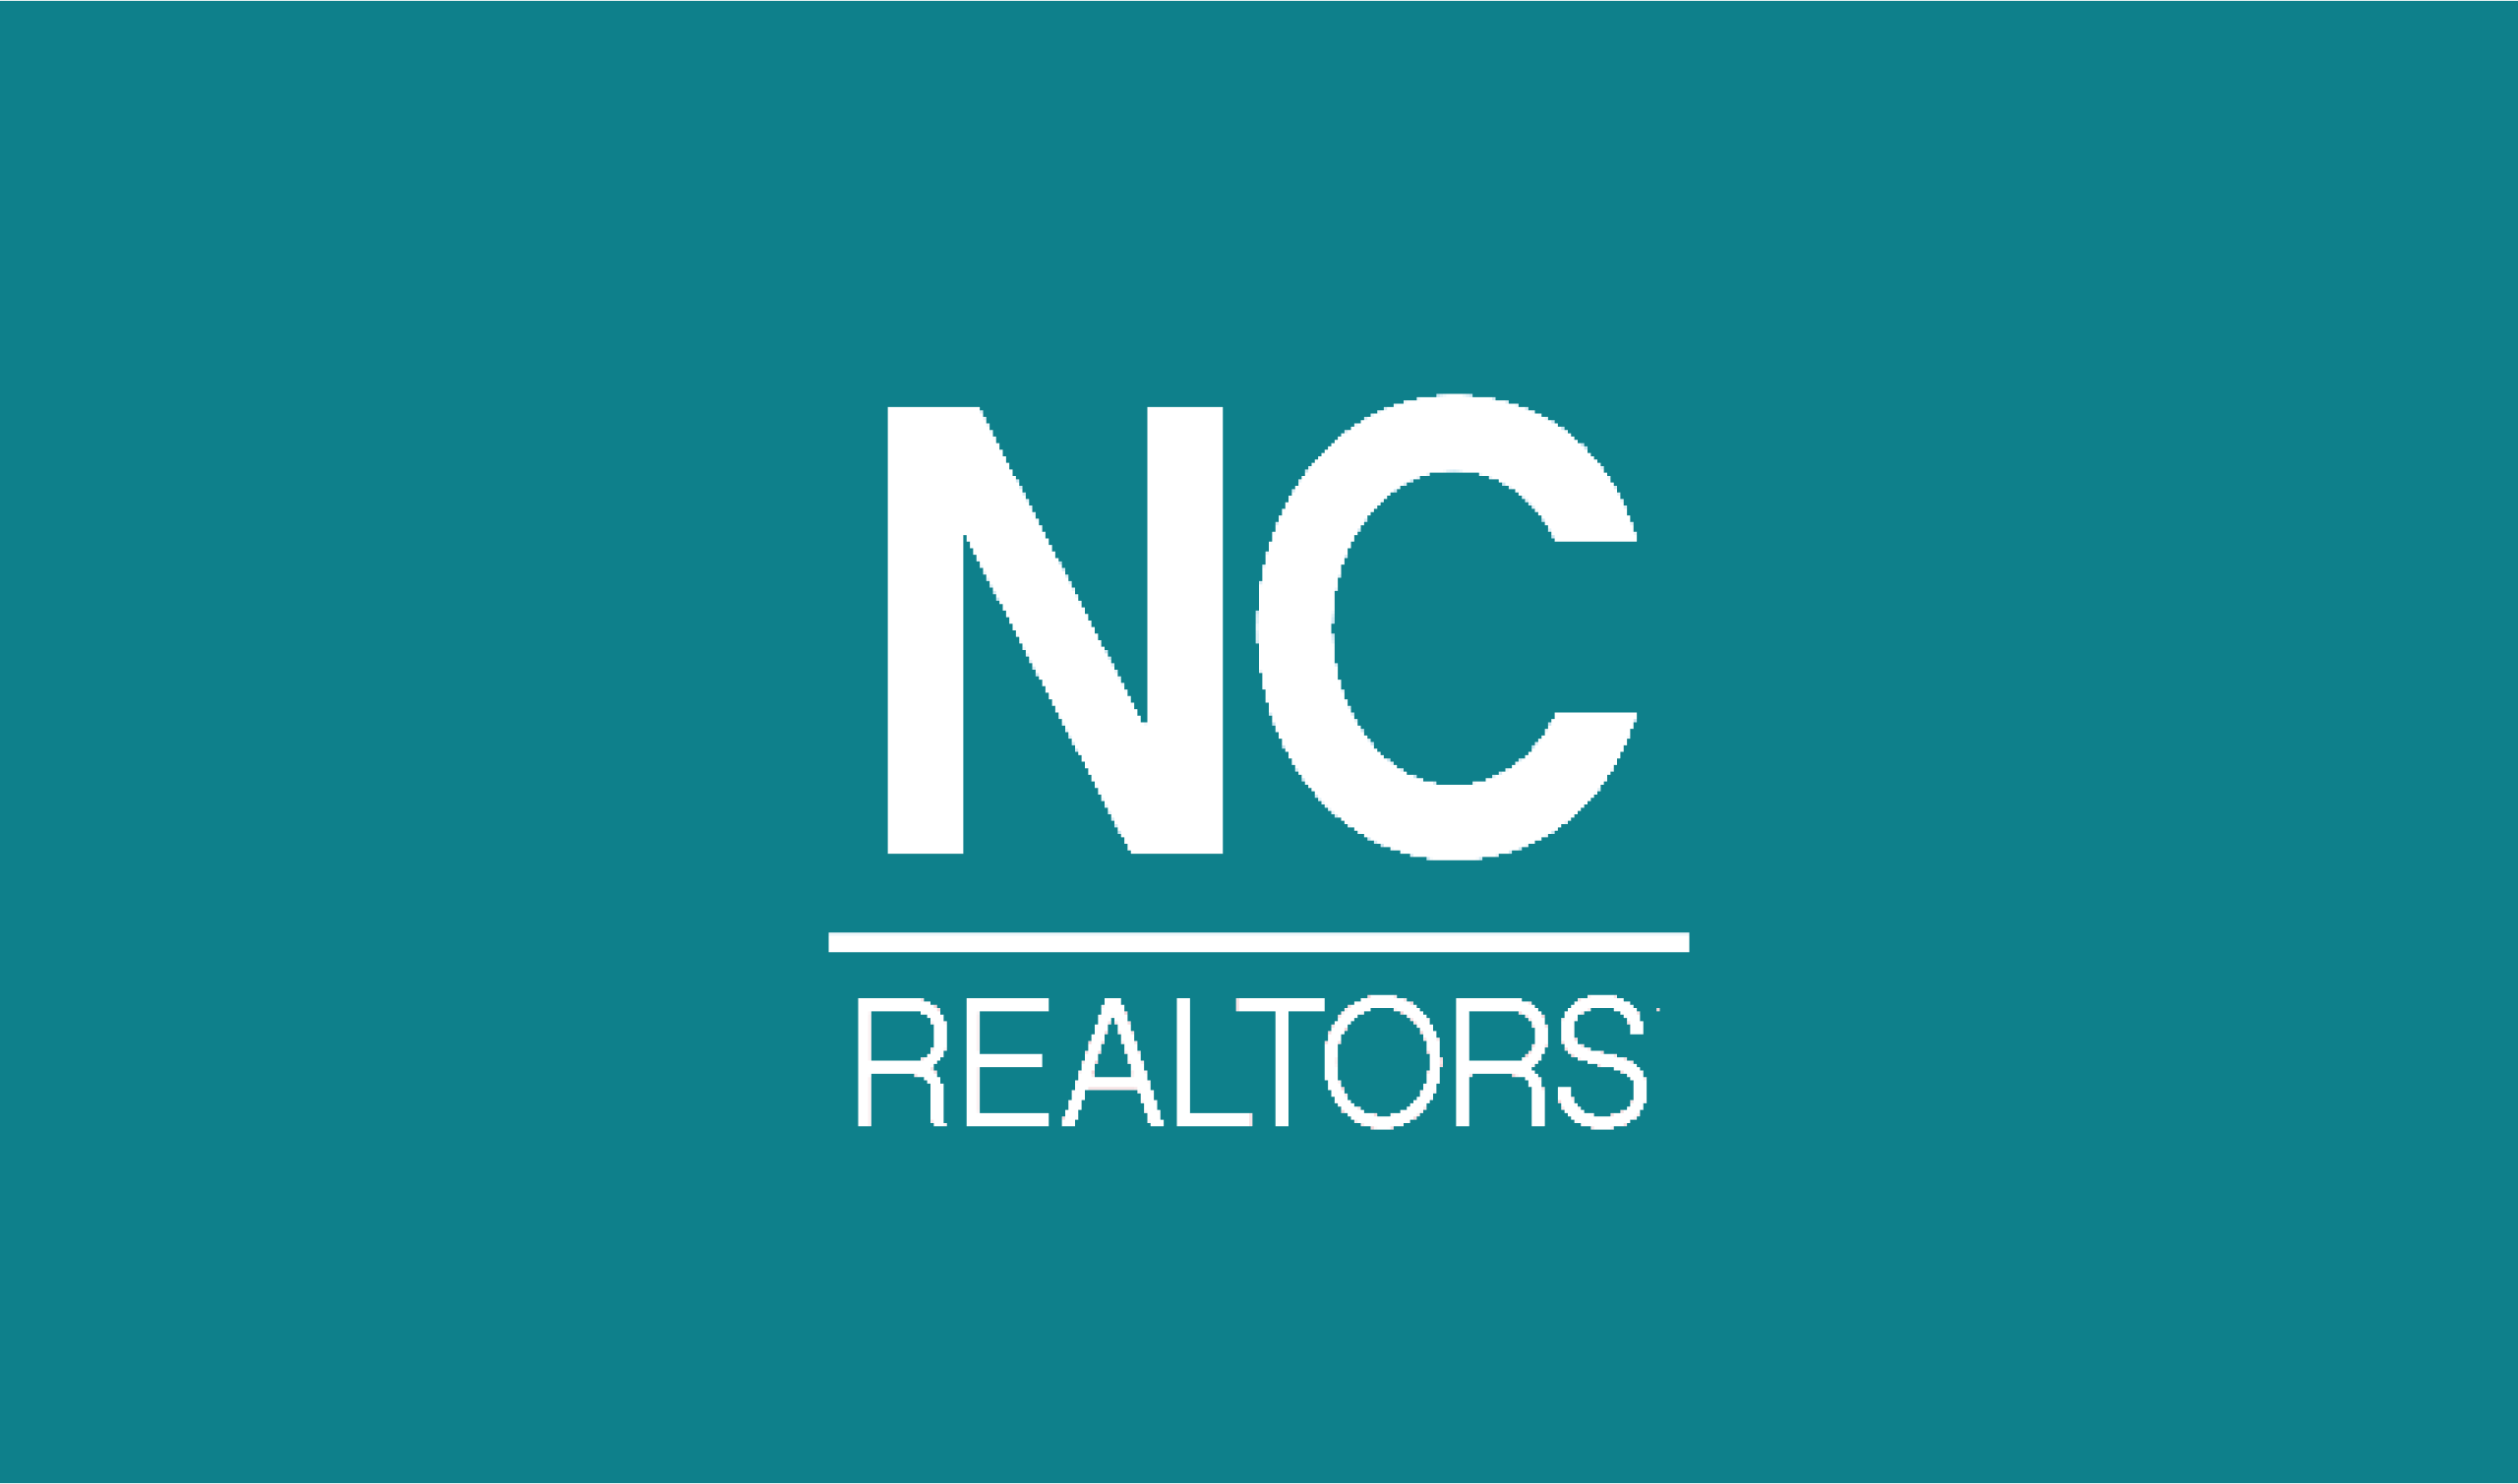 NC realtors logo